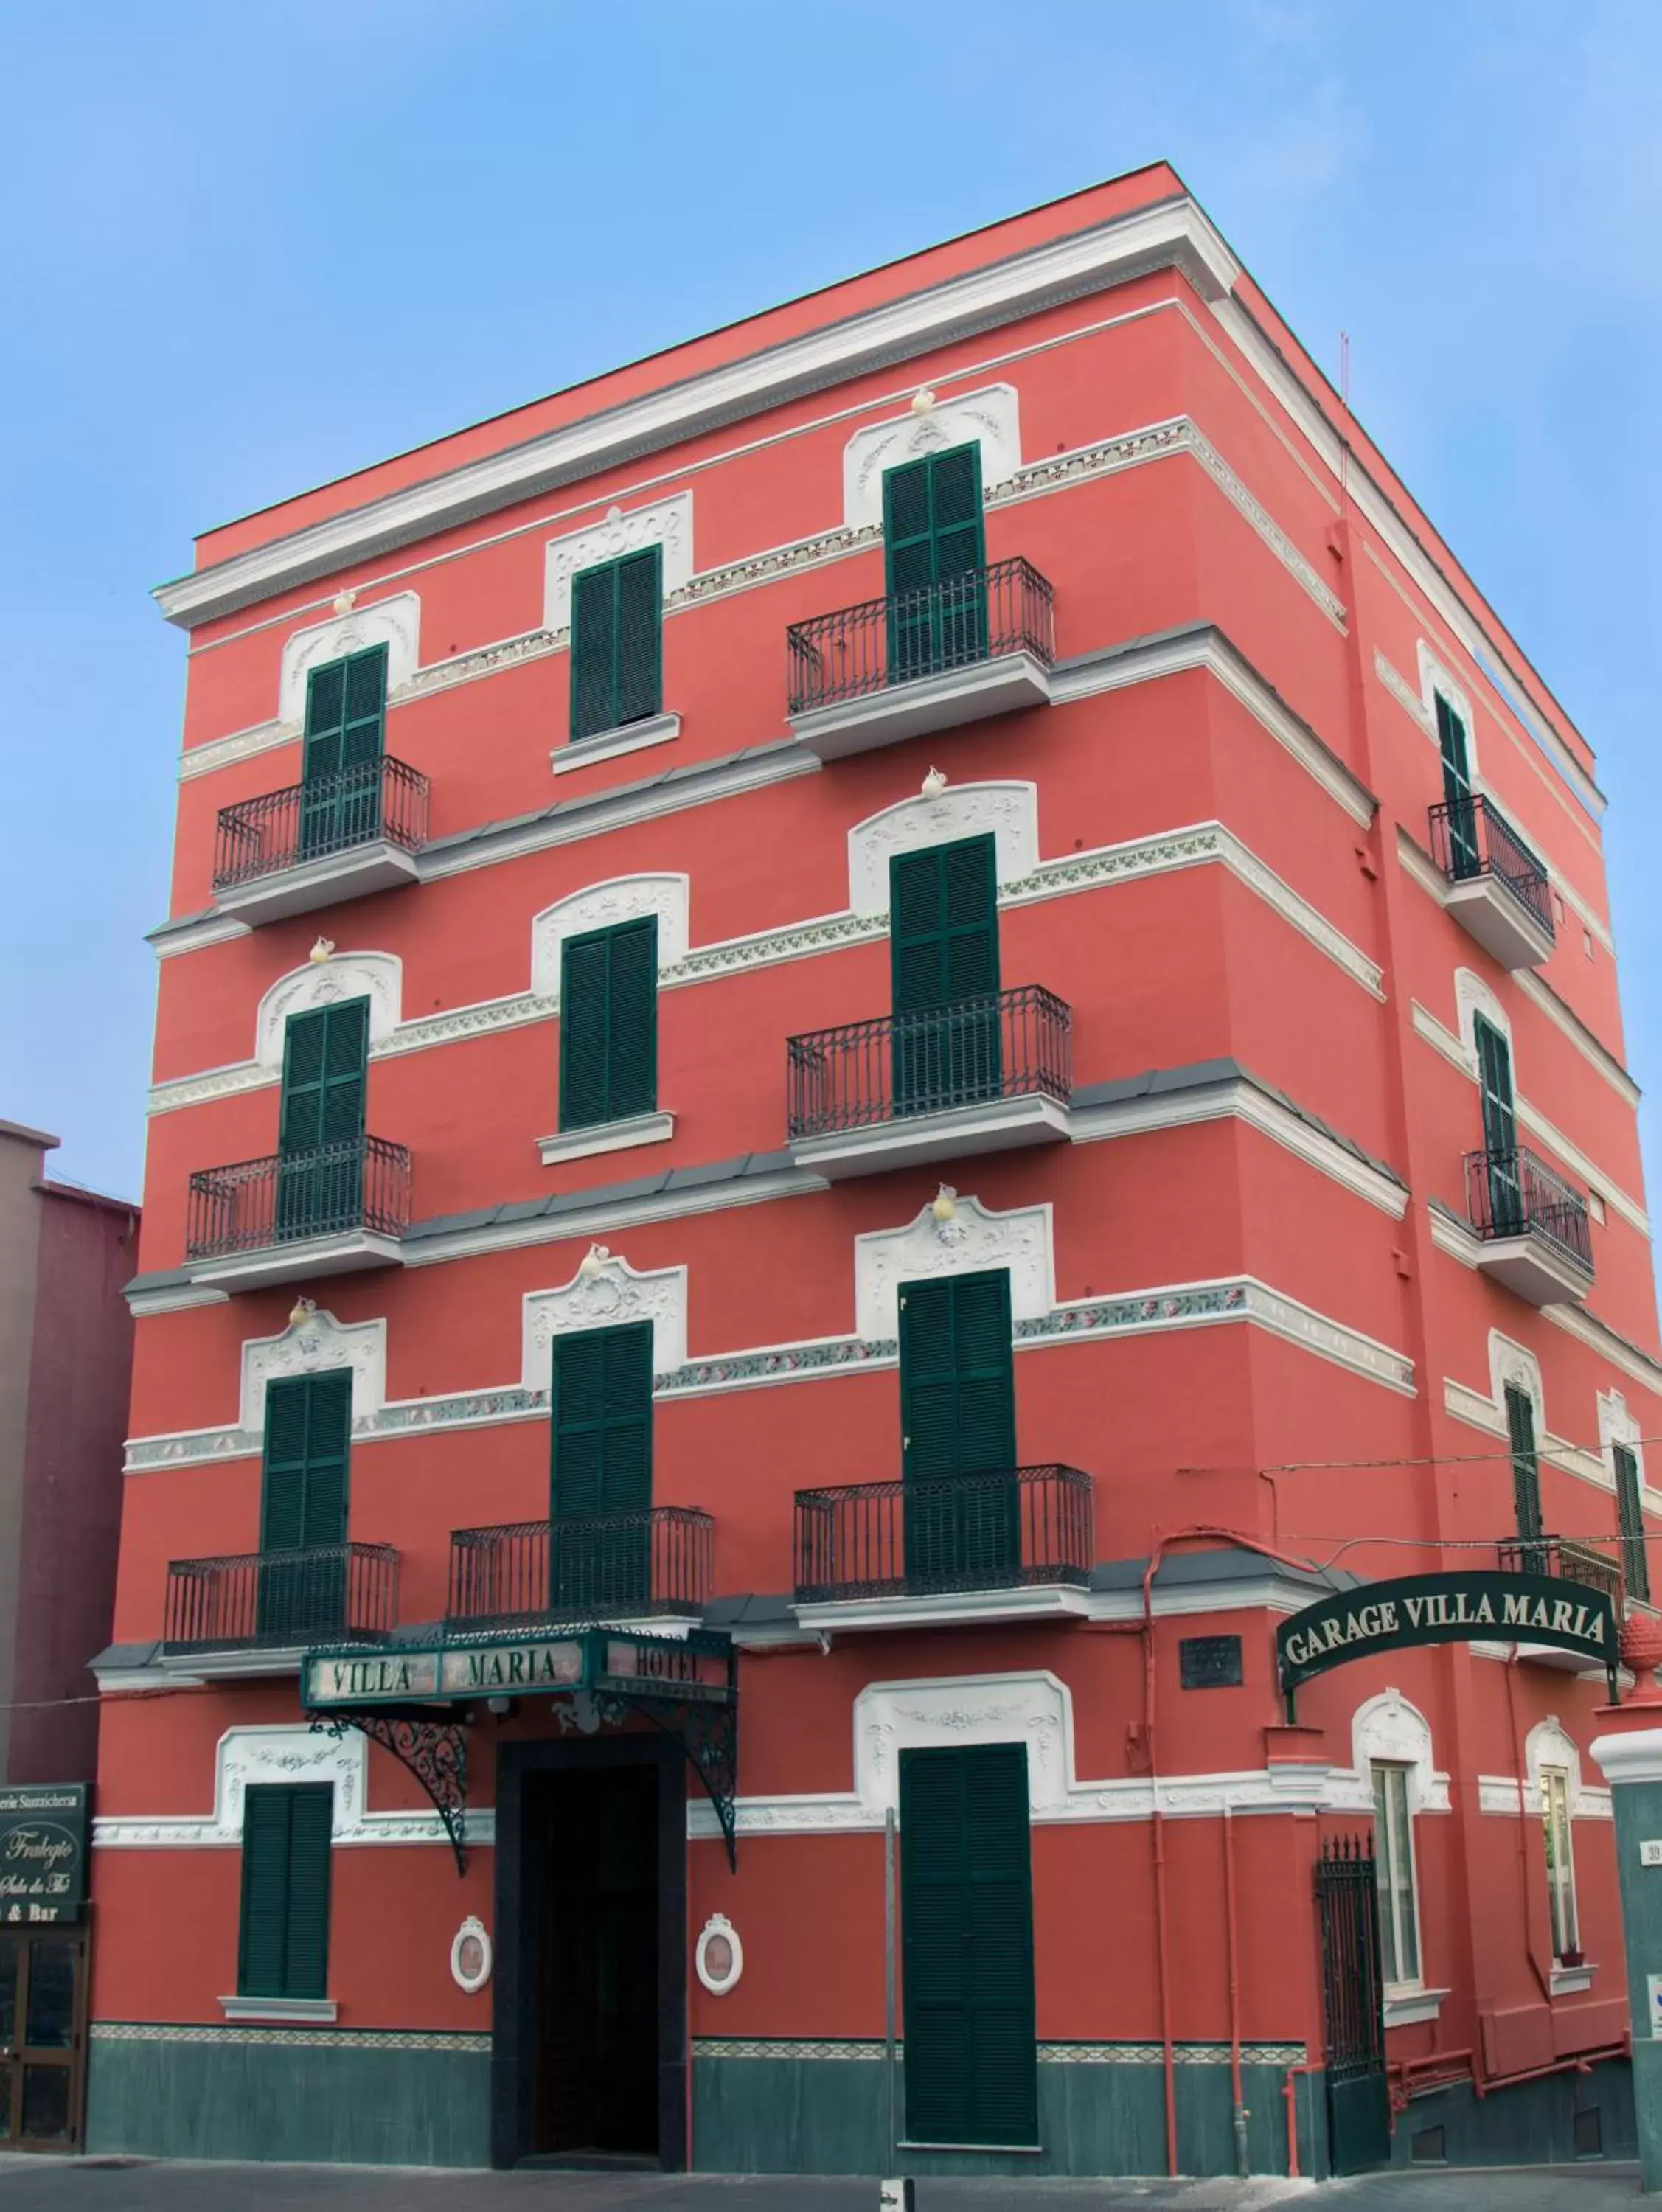 Property Building in Hotel Villa Maria